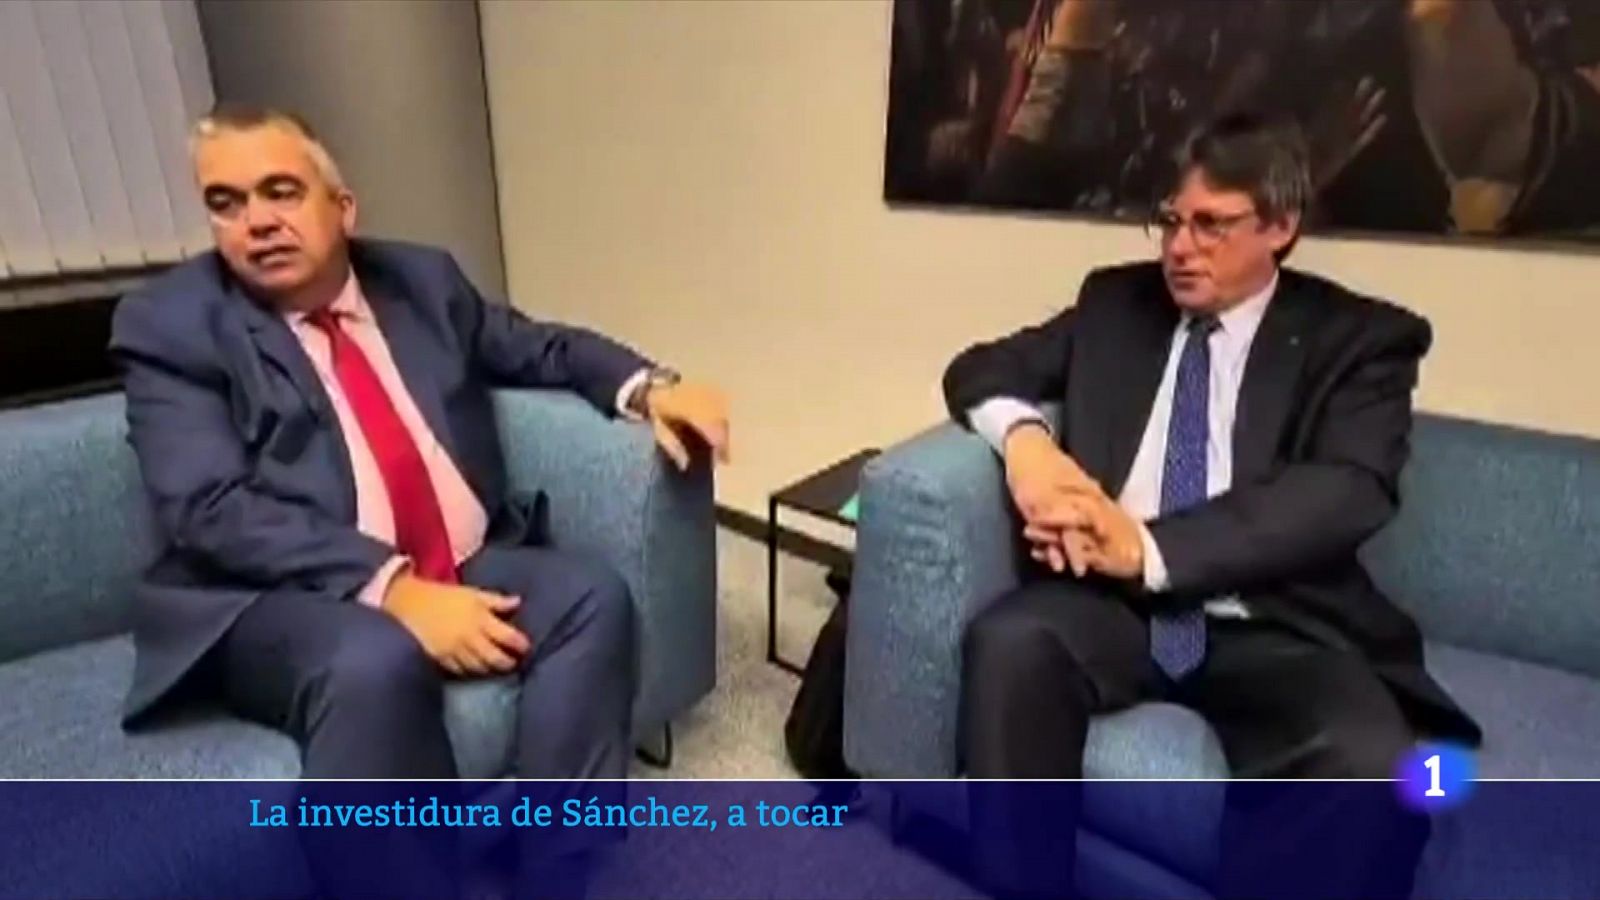 La reunió amb Puigdemont deixa la investidura a tocar